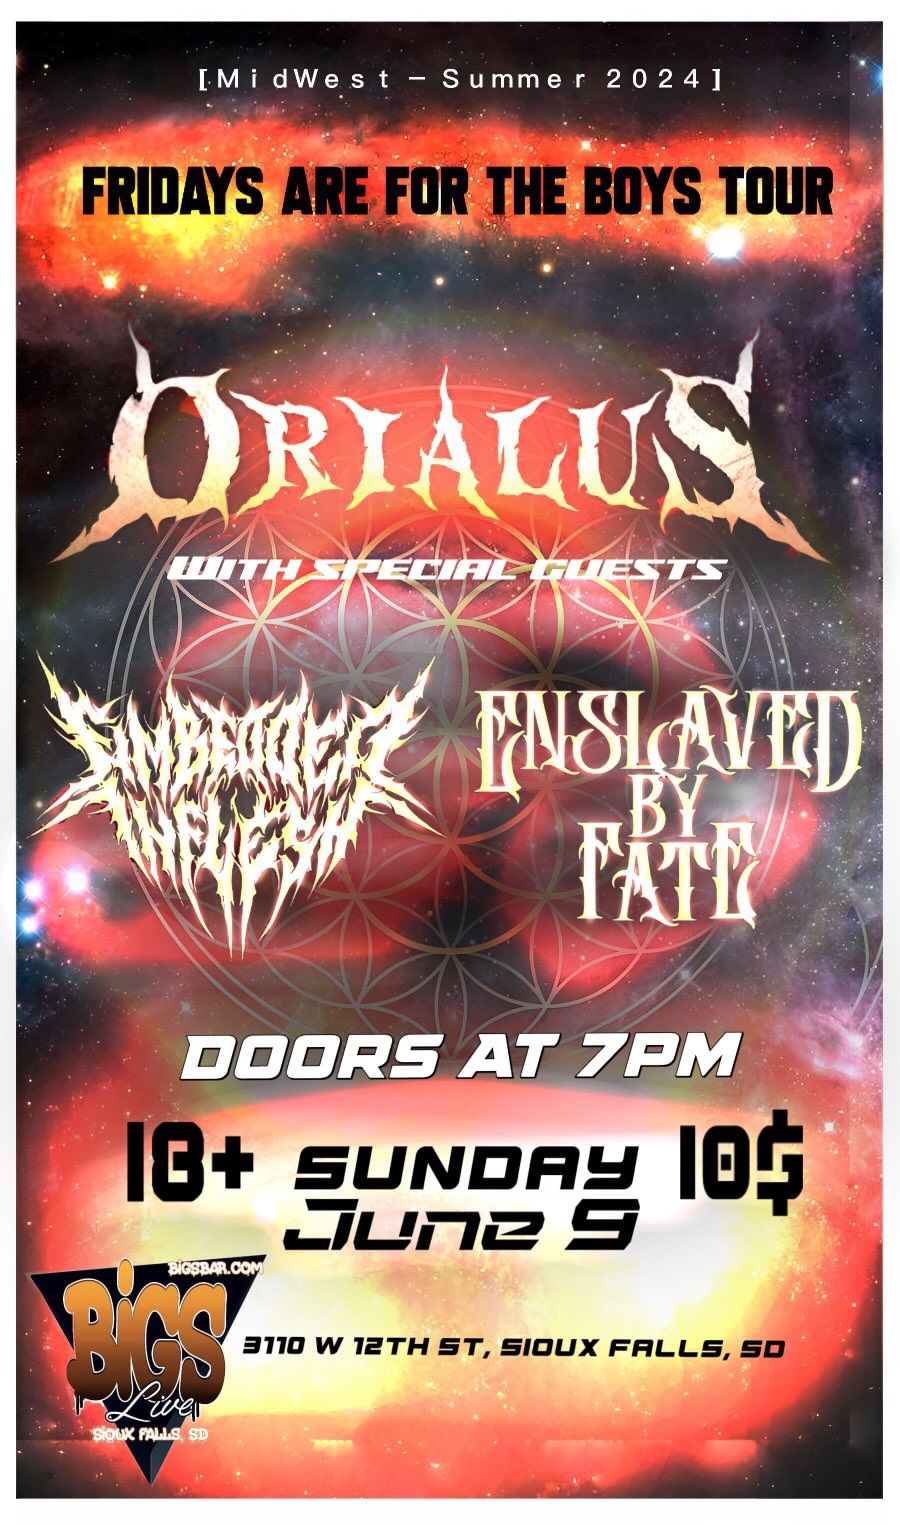 Orialus - FAFTB TOUR @ Bigs Bar w Embedded in Flesh & Enslaved by Fate